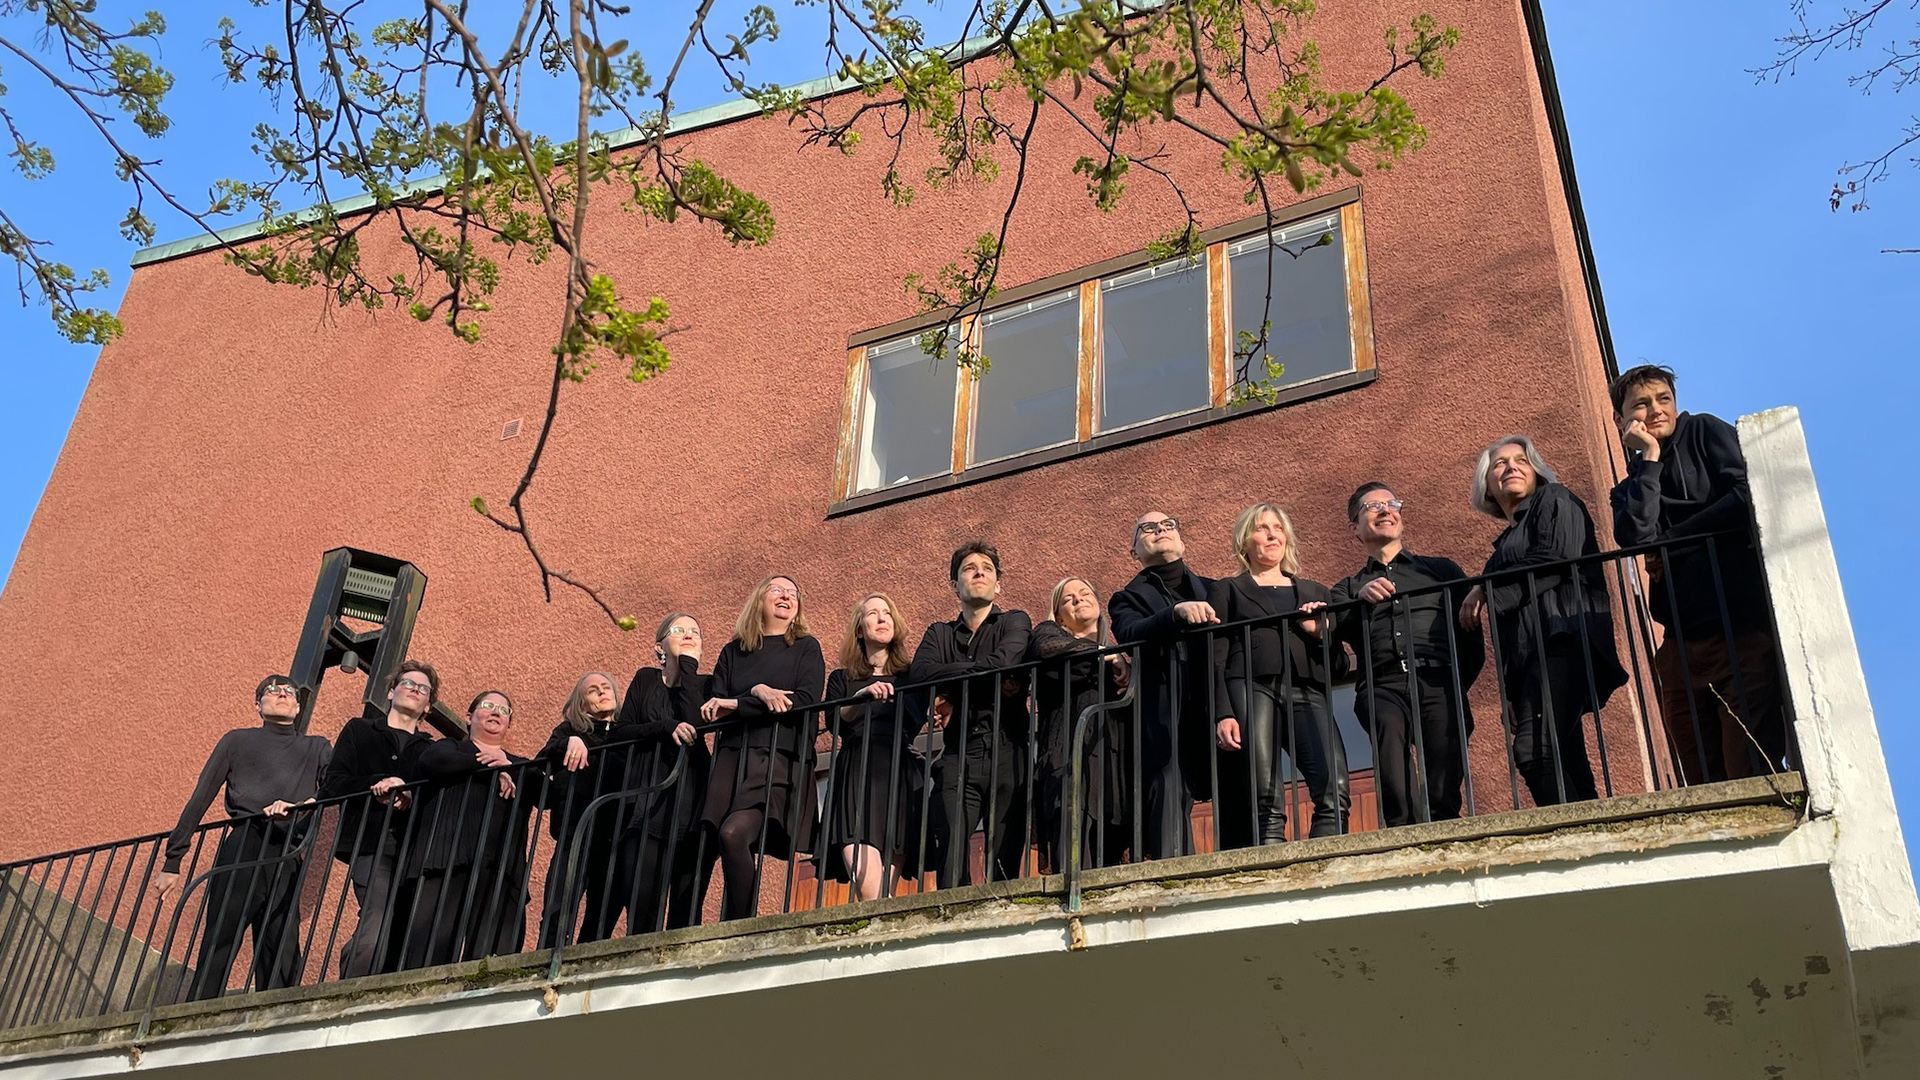 Oscarskyrkans vokalensemble står svartklädda och uppradade längs ett balkongräcke med blå himmel i bakgrunden och blickarna ner mot betraktaren/fotografen.